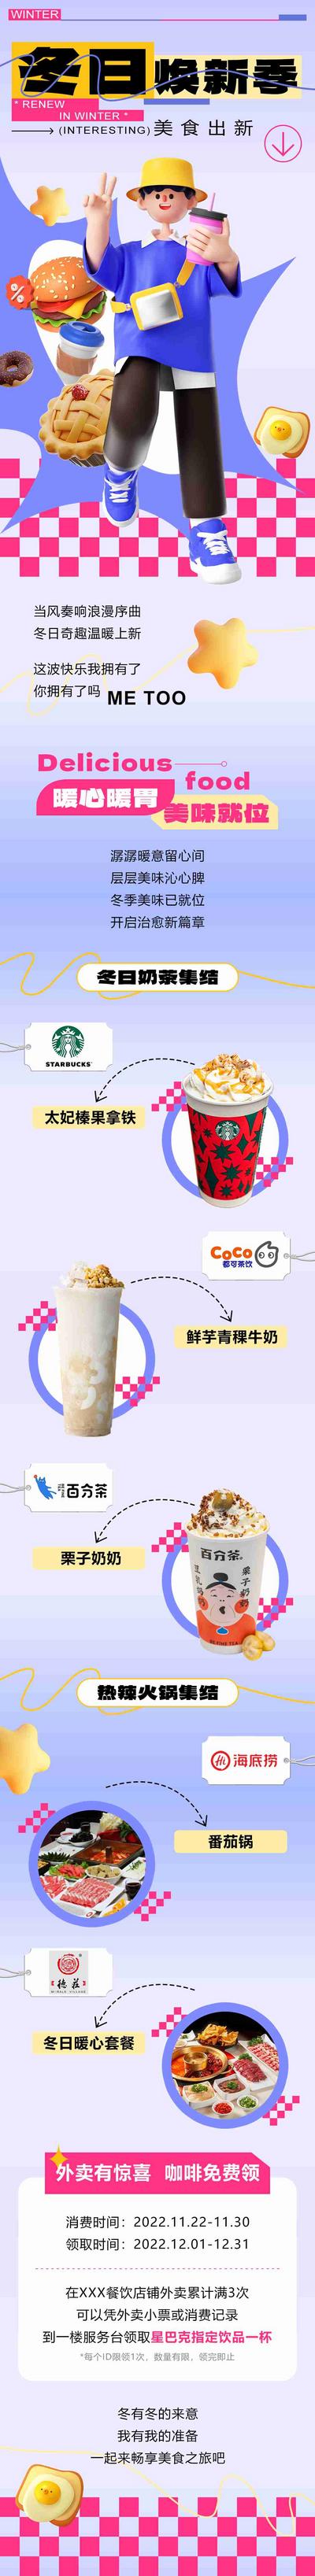 南门网 长图 美食 专题设计 推文 冬天 奶茶 简约 商城 宣传 推广